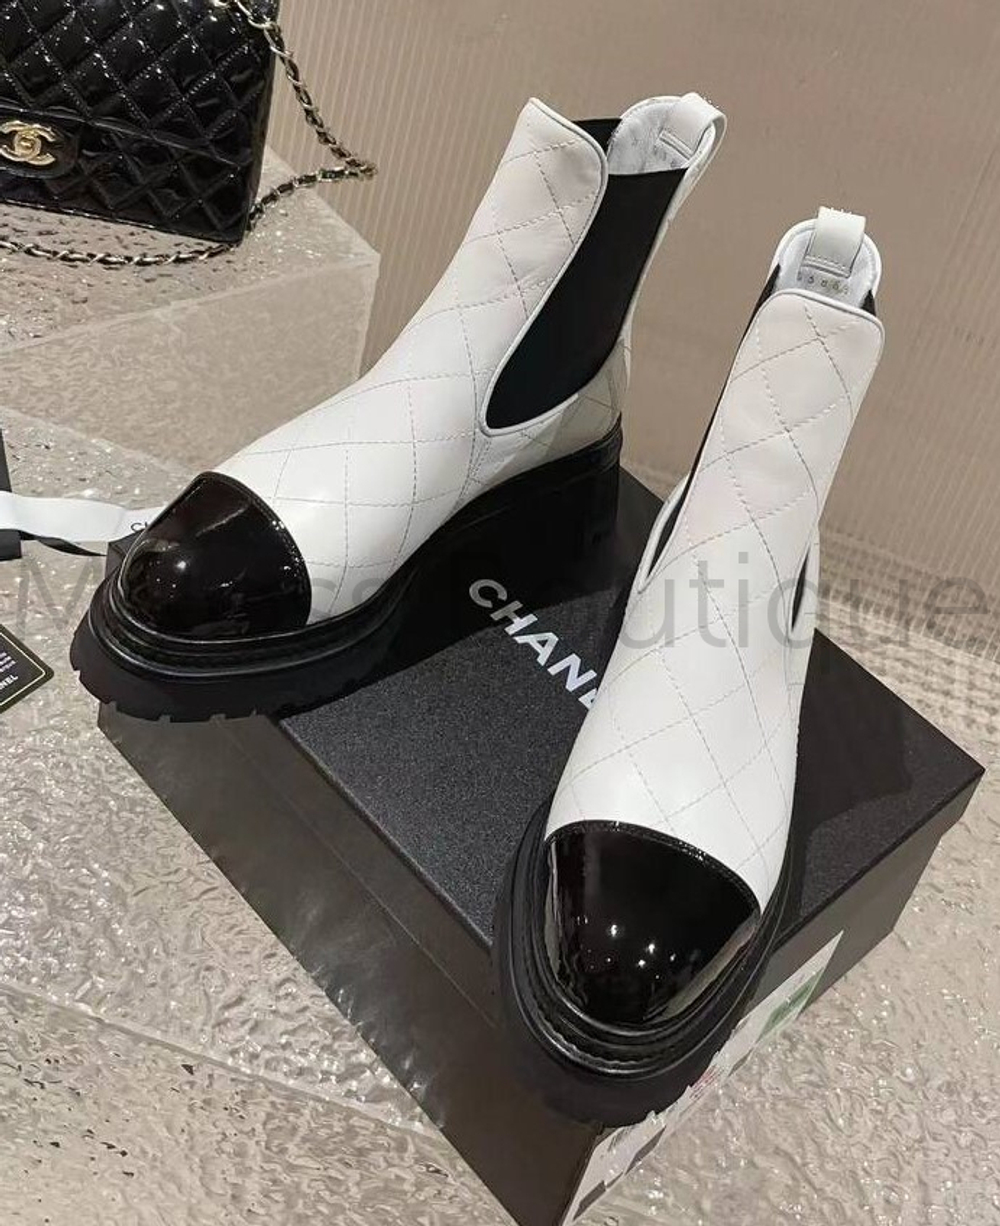 Белые стеганные ботинки челси Chanel премиум класса